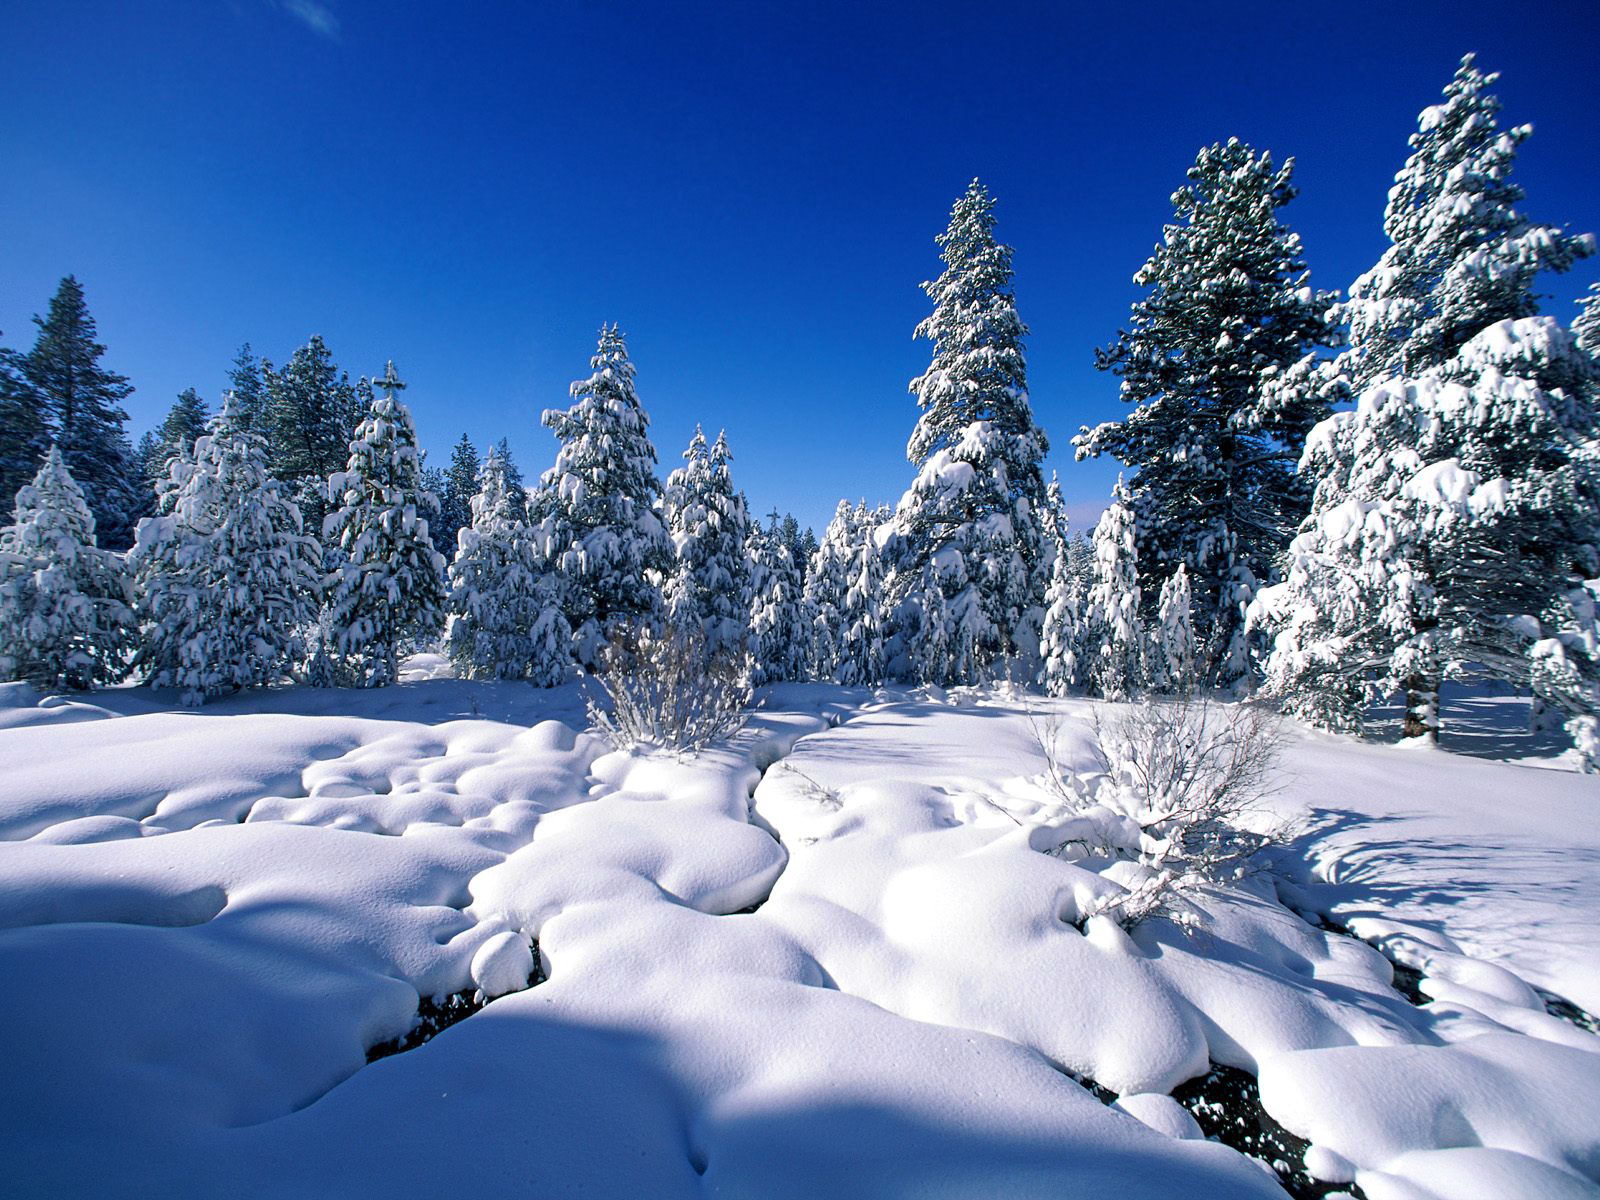 自然风景,冰天雪地,冰雪世界,雪景壁纸_高清风景壁纸_彼岸桌面